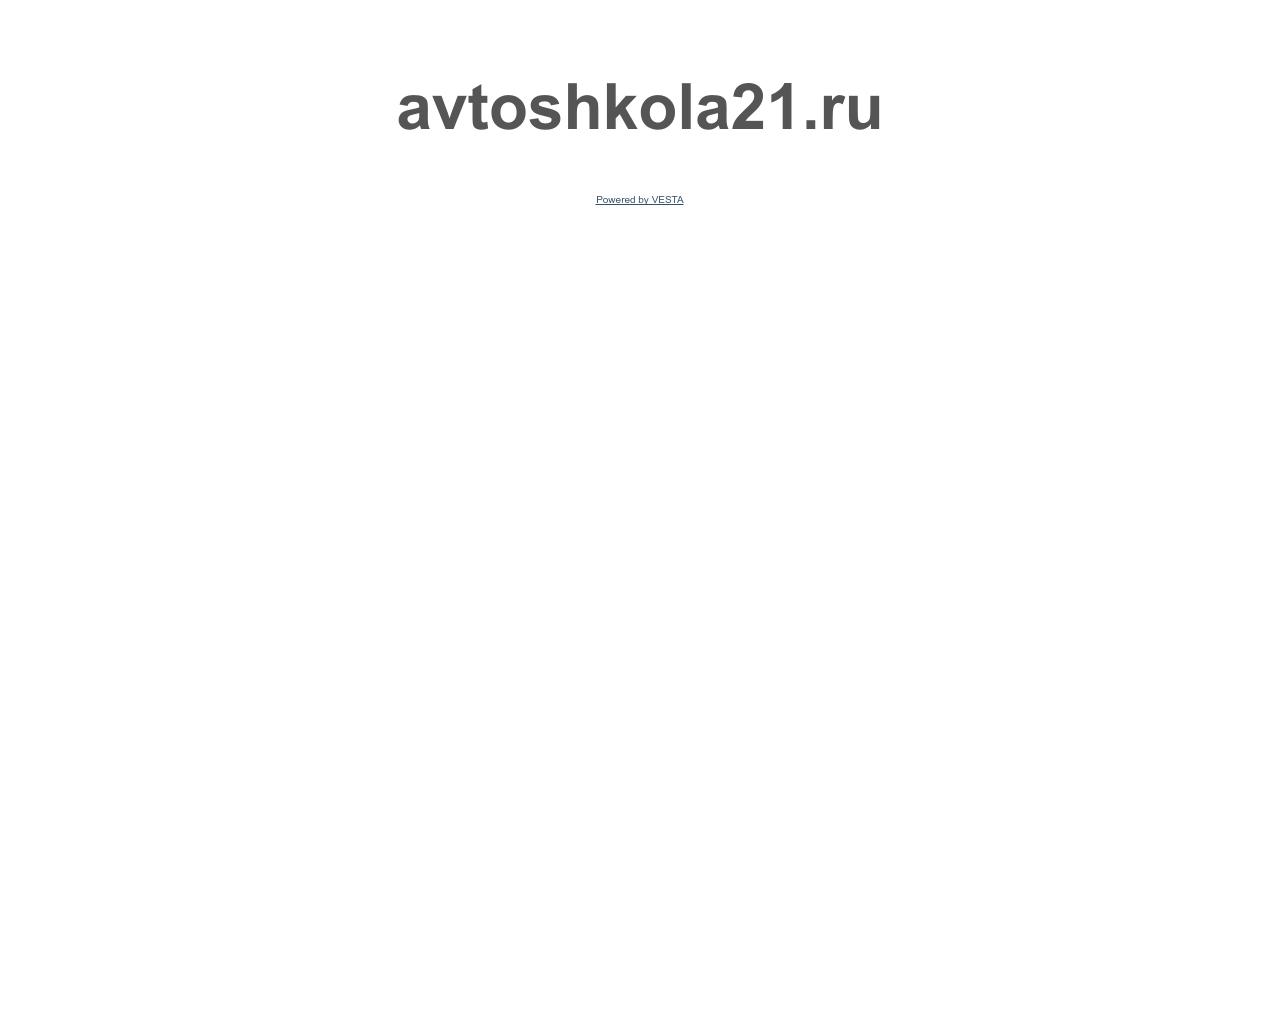 Изображение сайта avtoshkola21.ru в разрешении 1280x1024